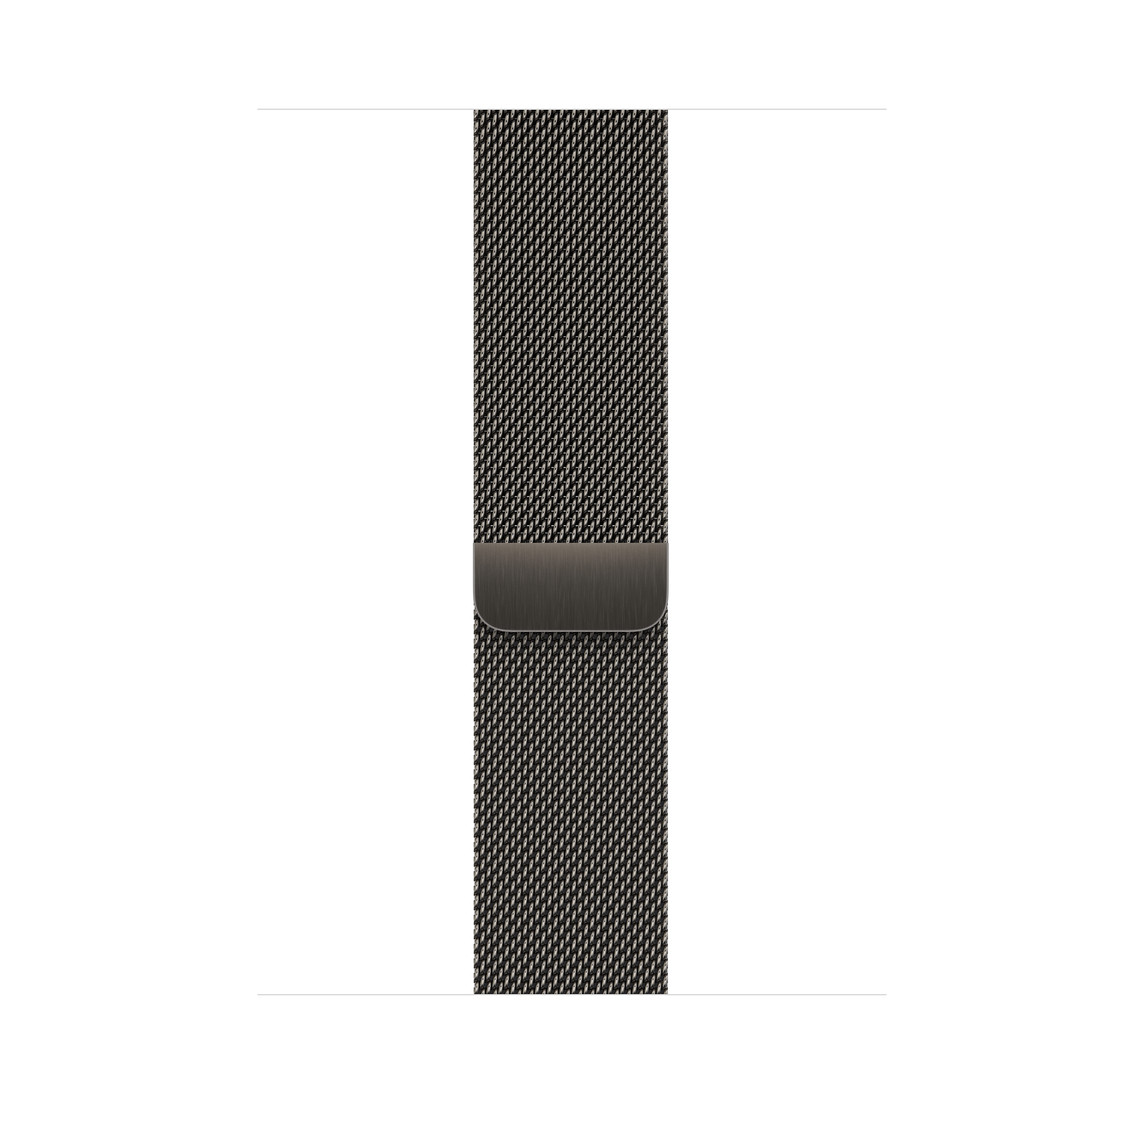 Bracelet Milanais graphite (gris foncé), maillons en acier inoxydable poli avec fermoir magnétique